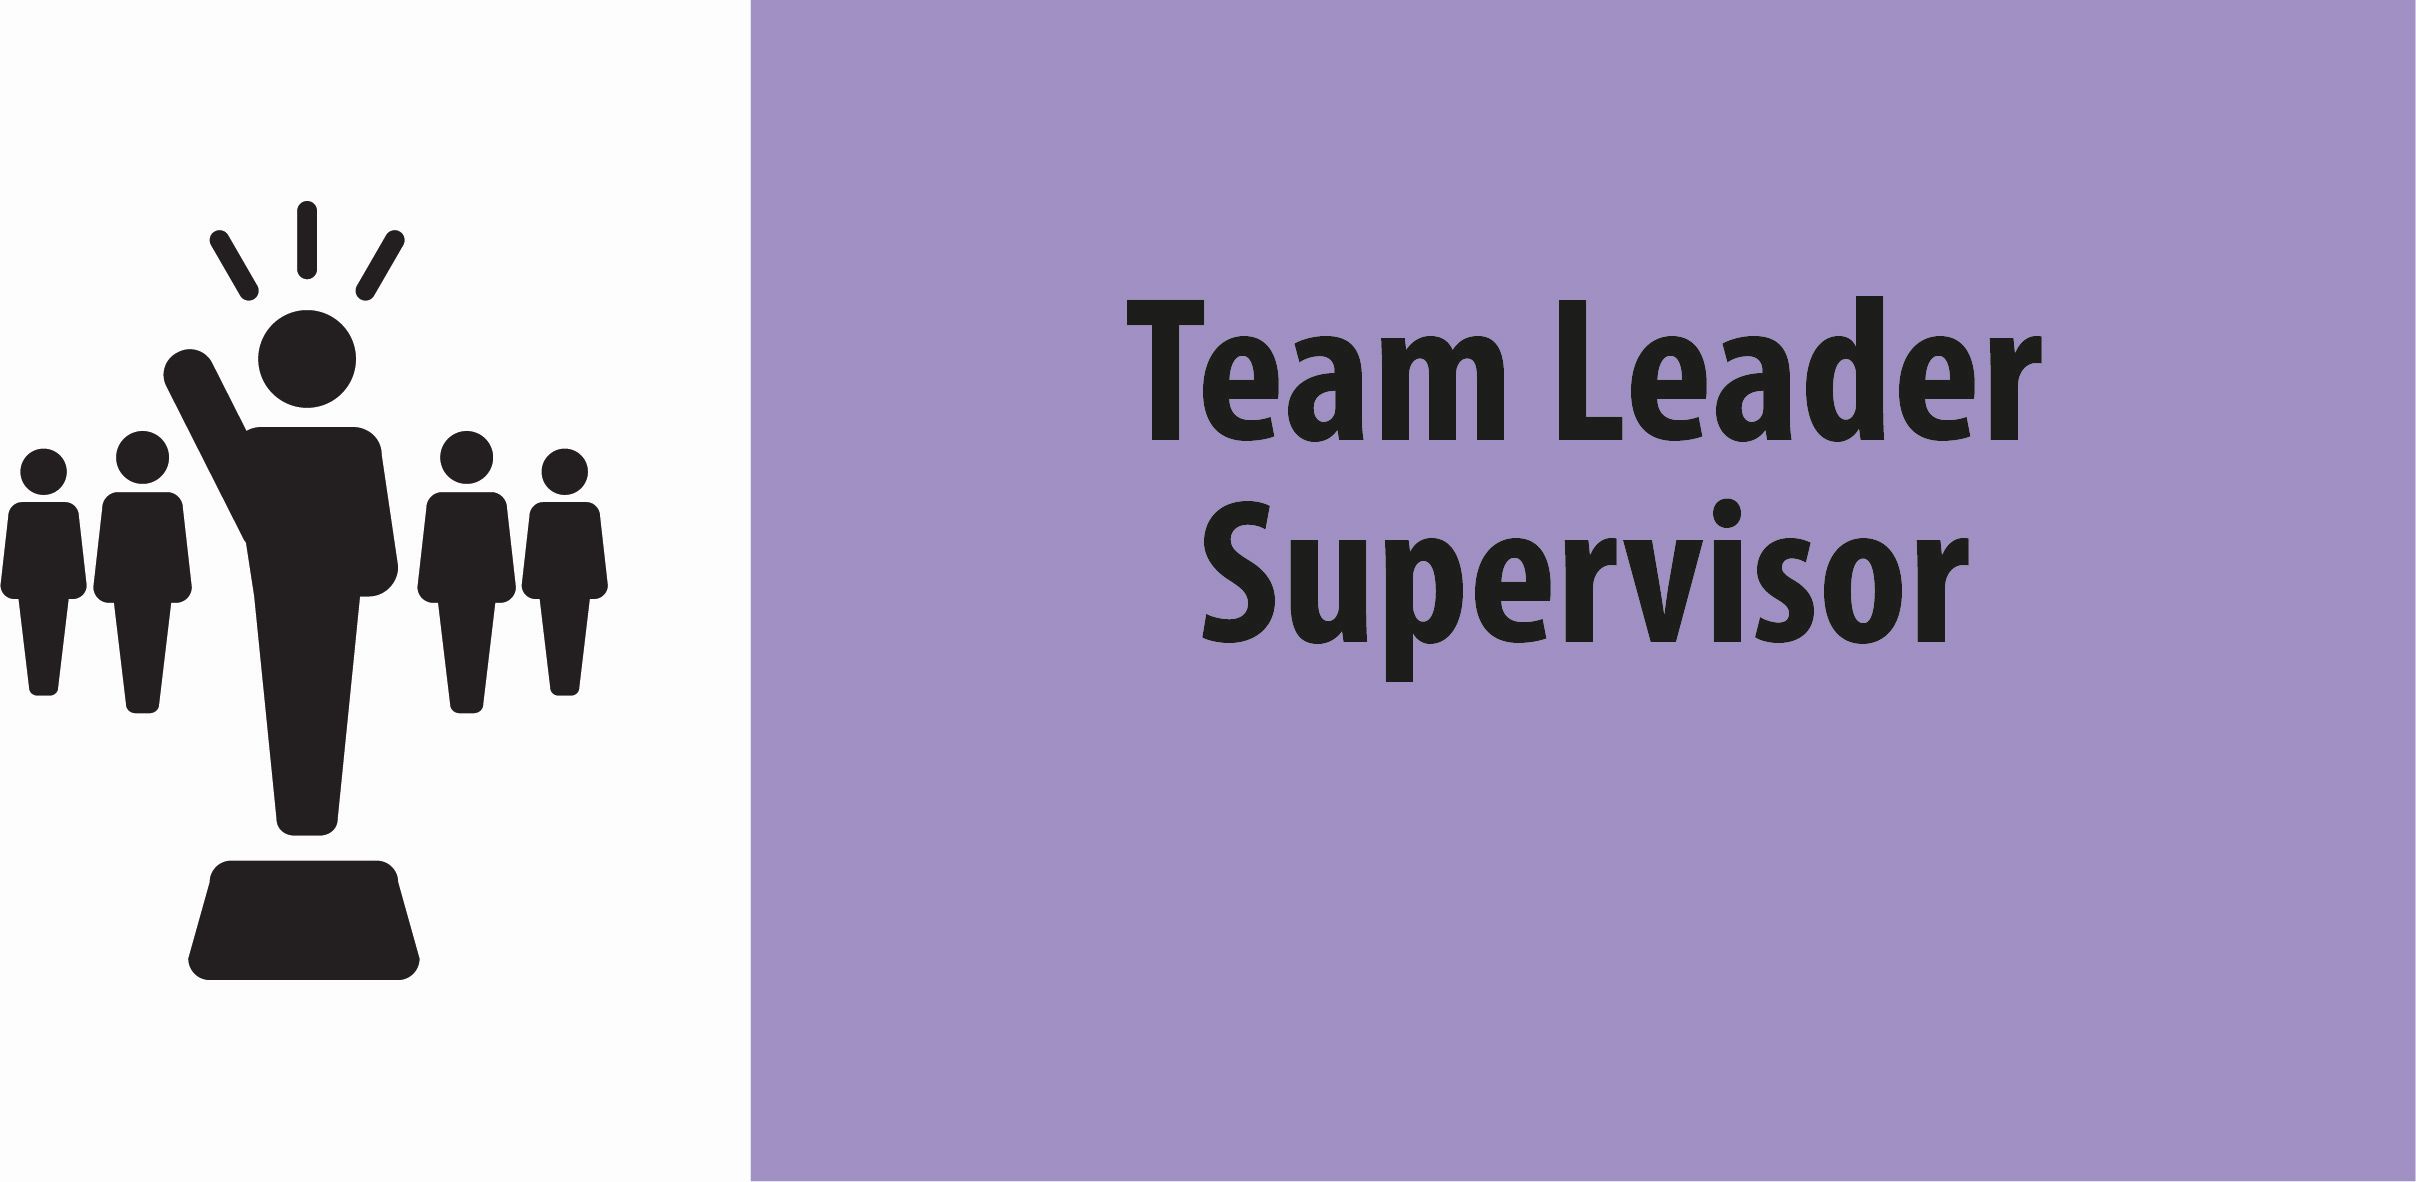 Team Leader Supervisor